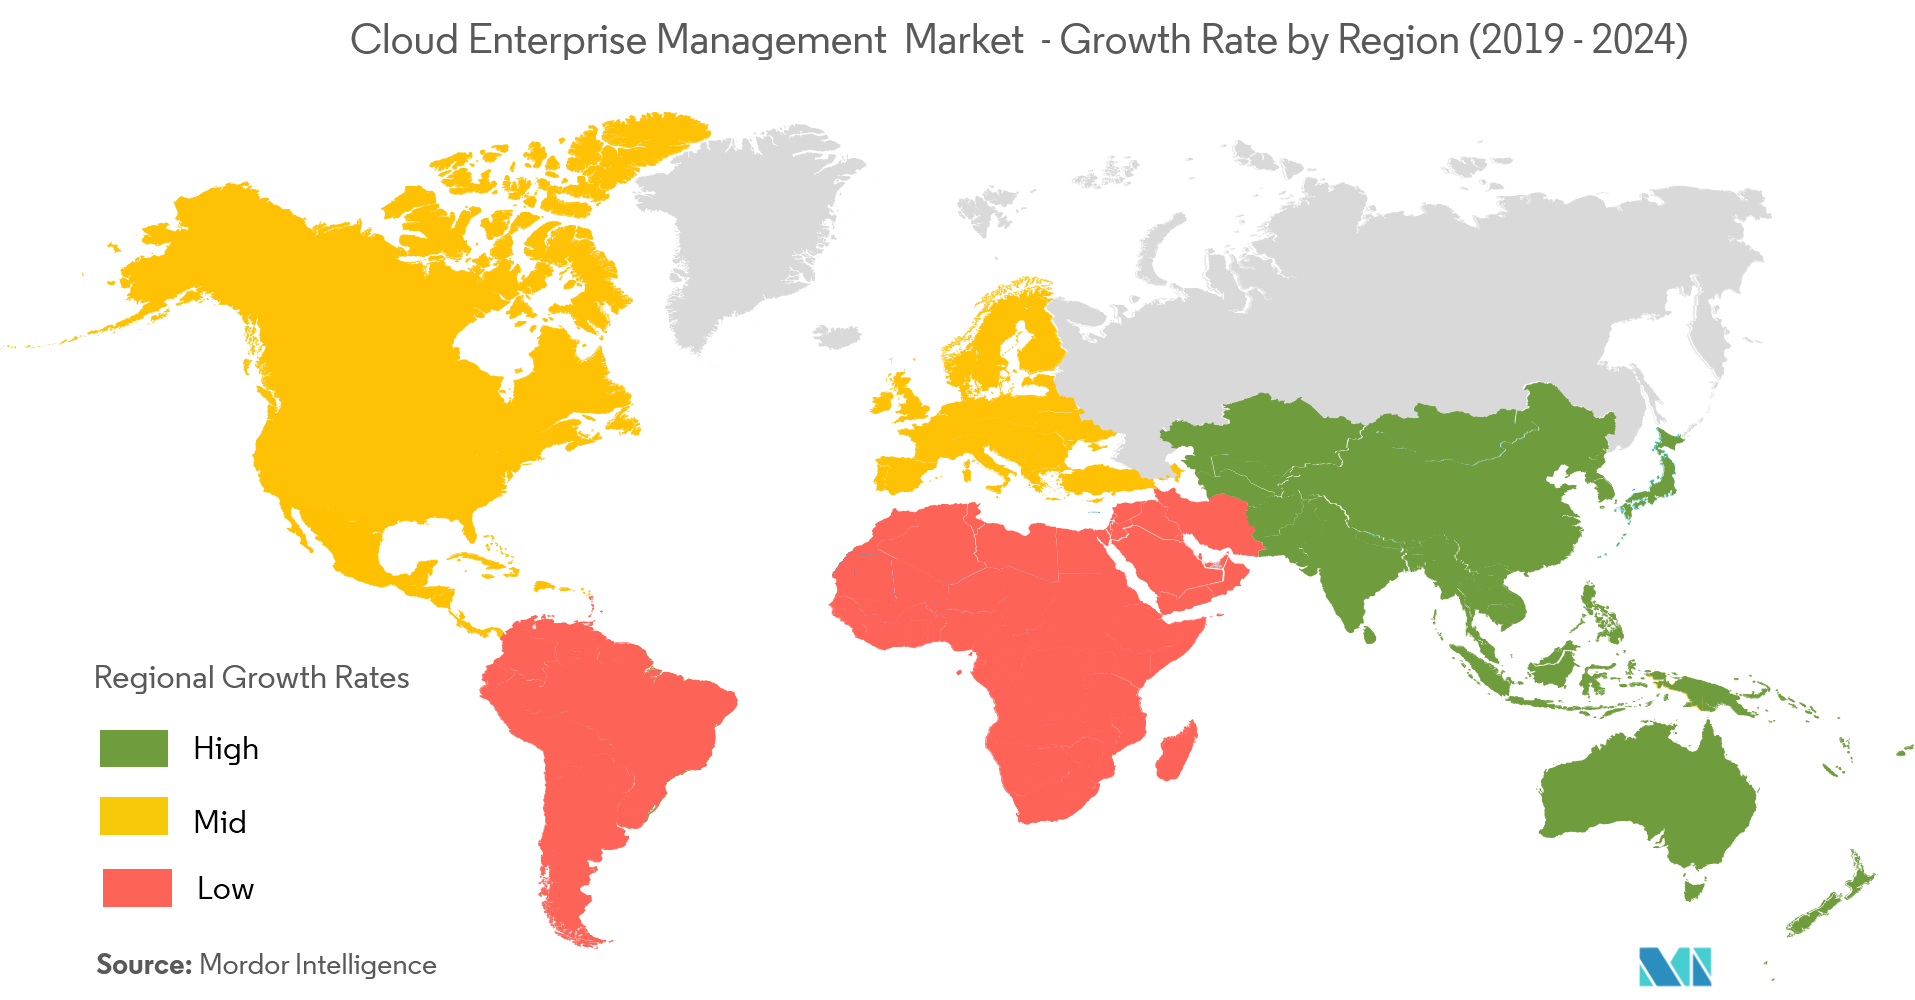 Cloud Enterprise Content Management Market - Growth Rate by Region (2019 - 2024)